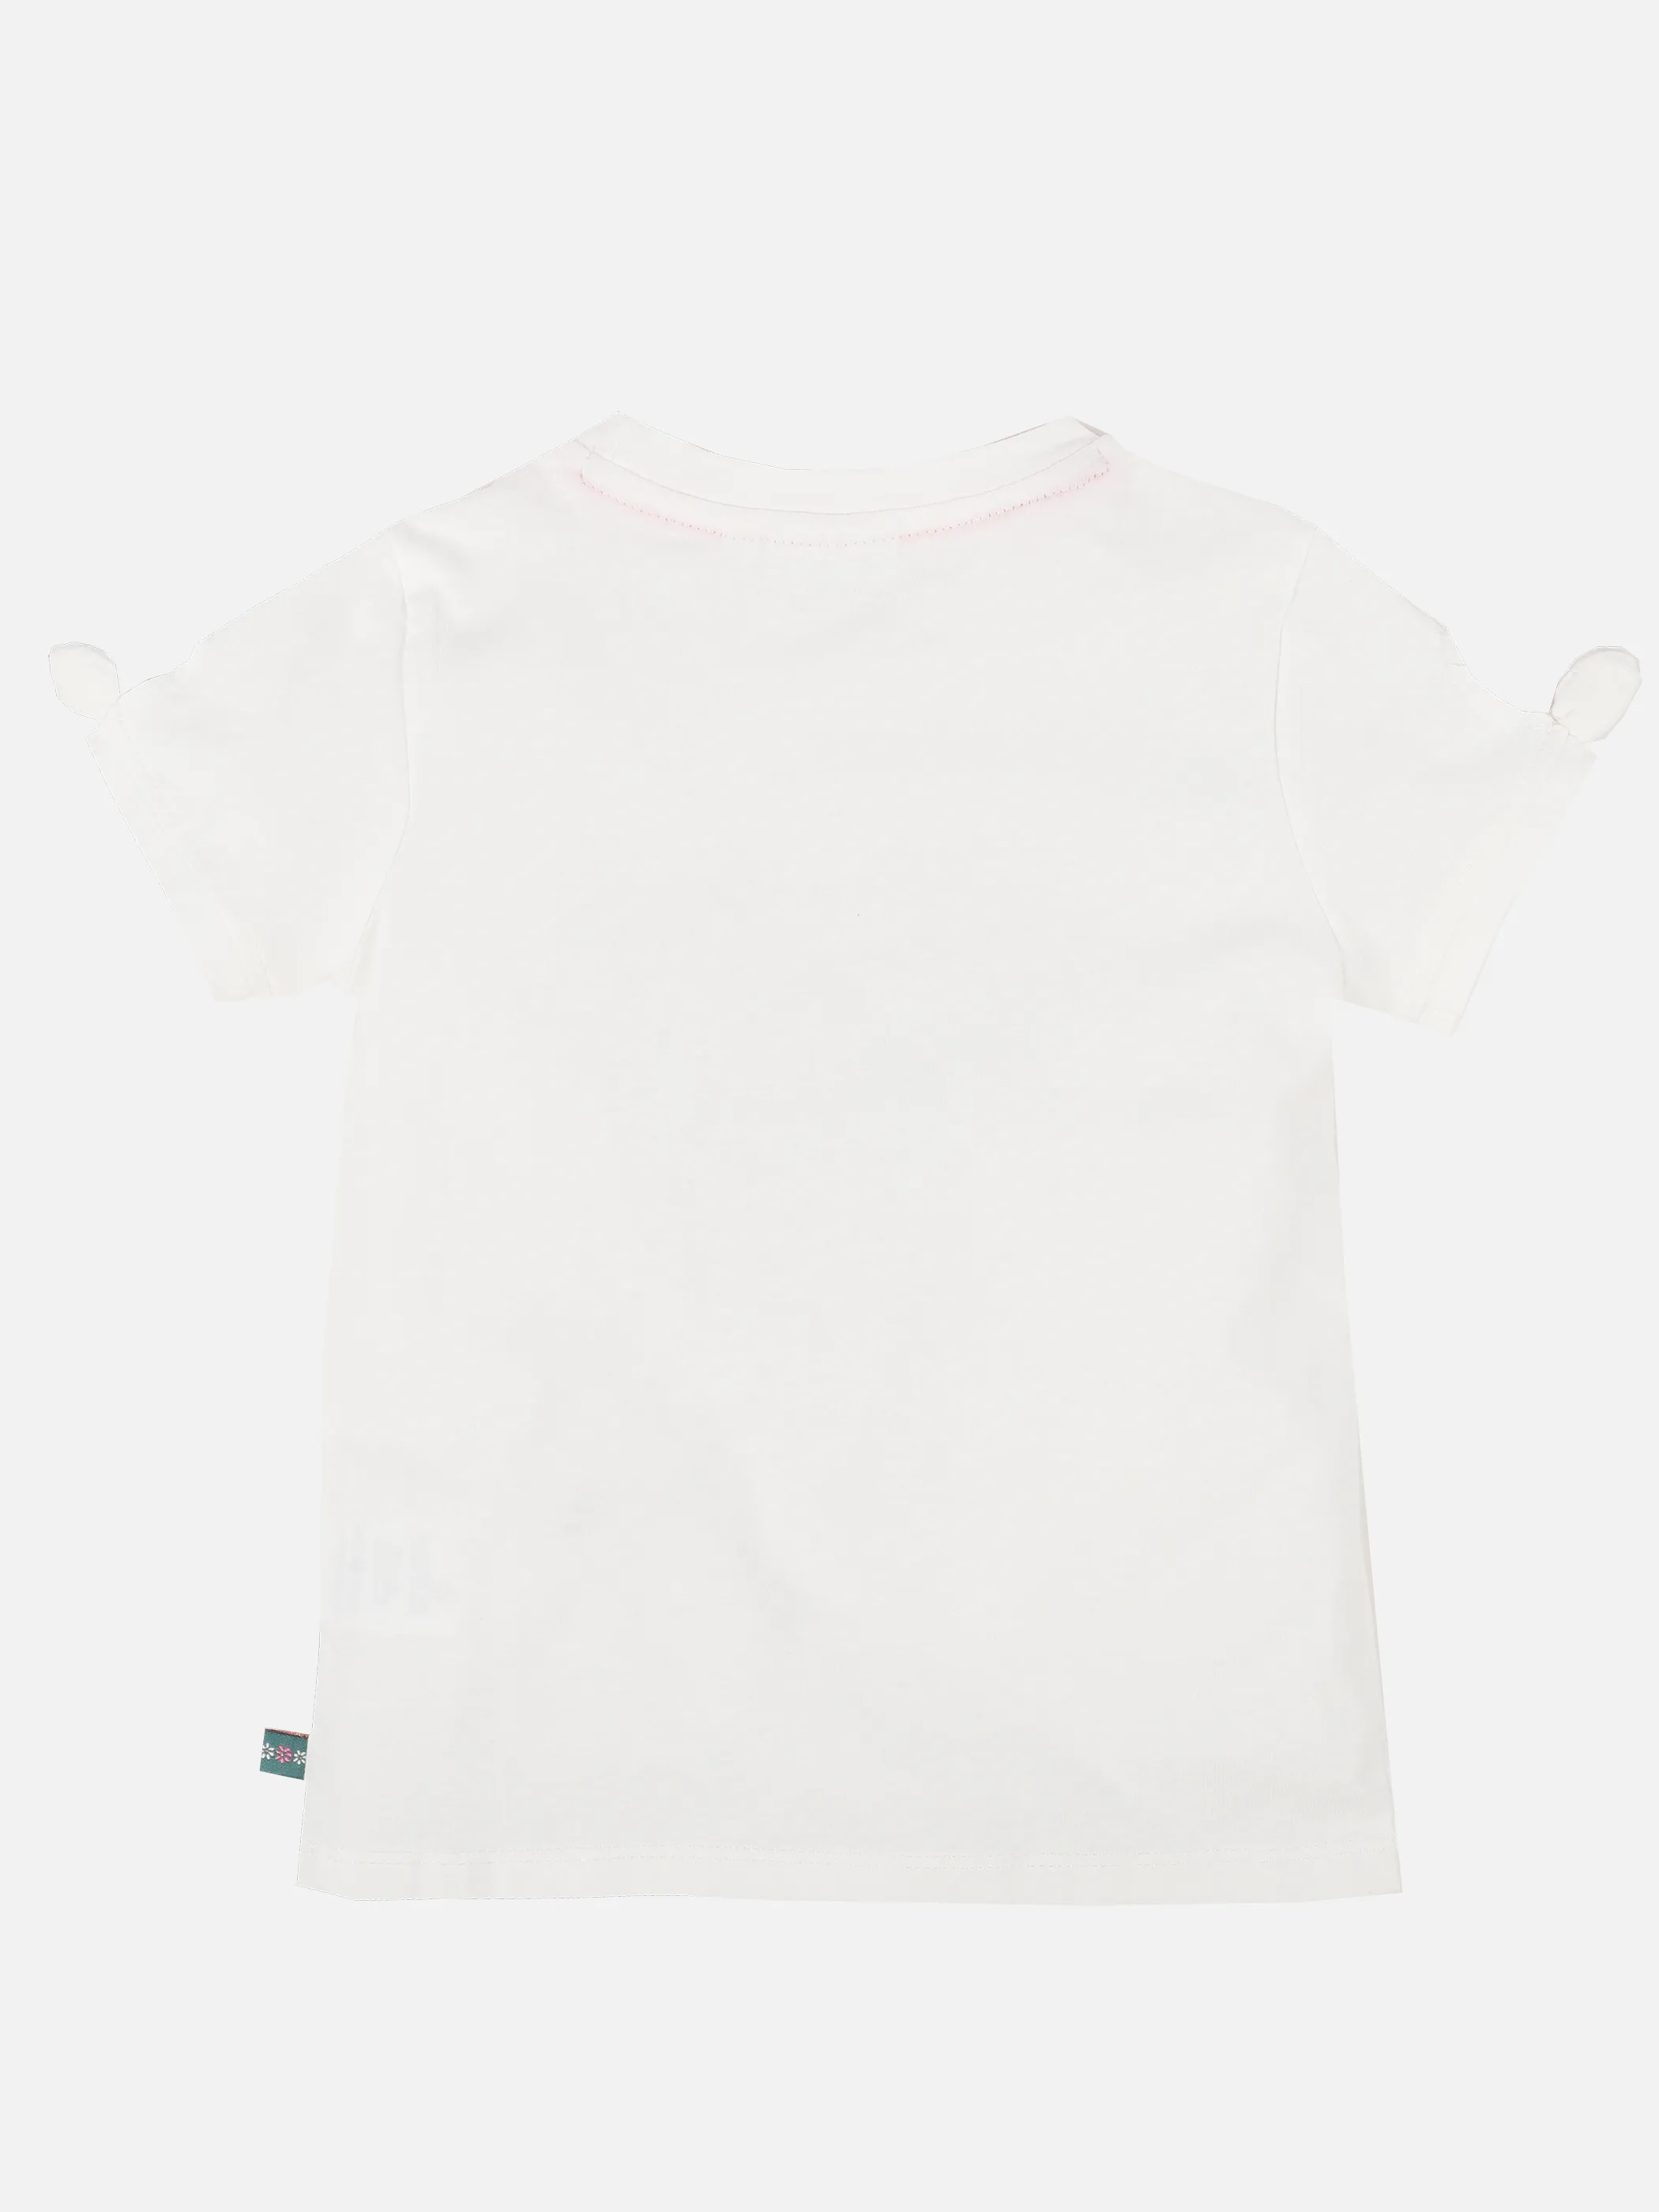 Stop + Go KM T-Shirt mit Frontdruck in weiß Weiß 891522 WEIß 2